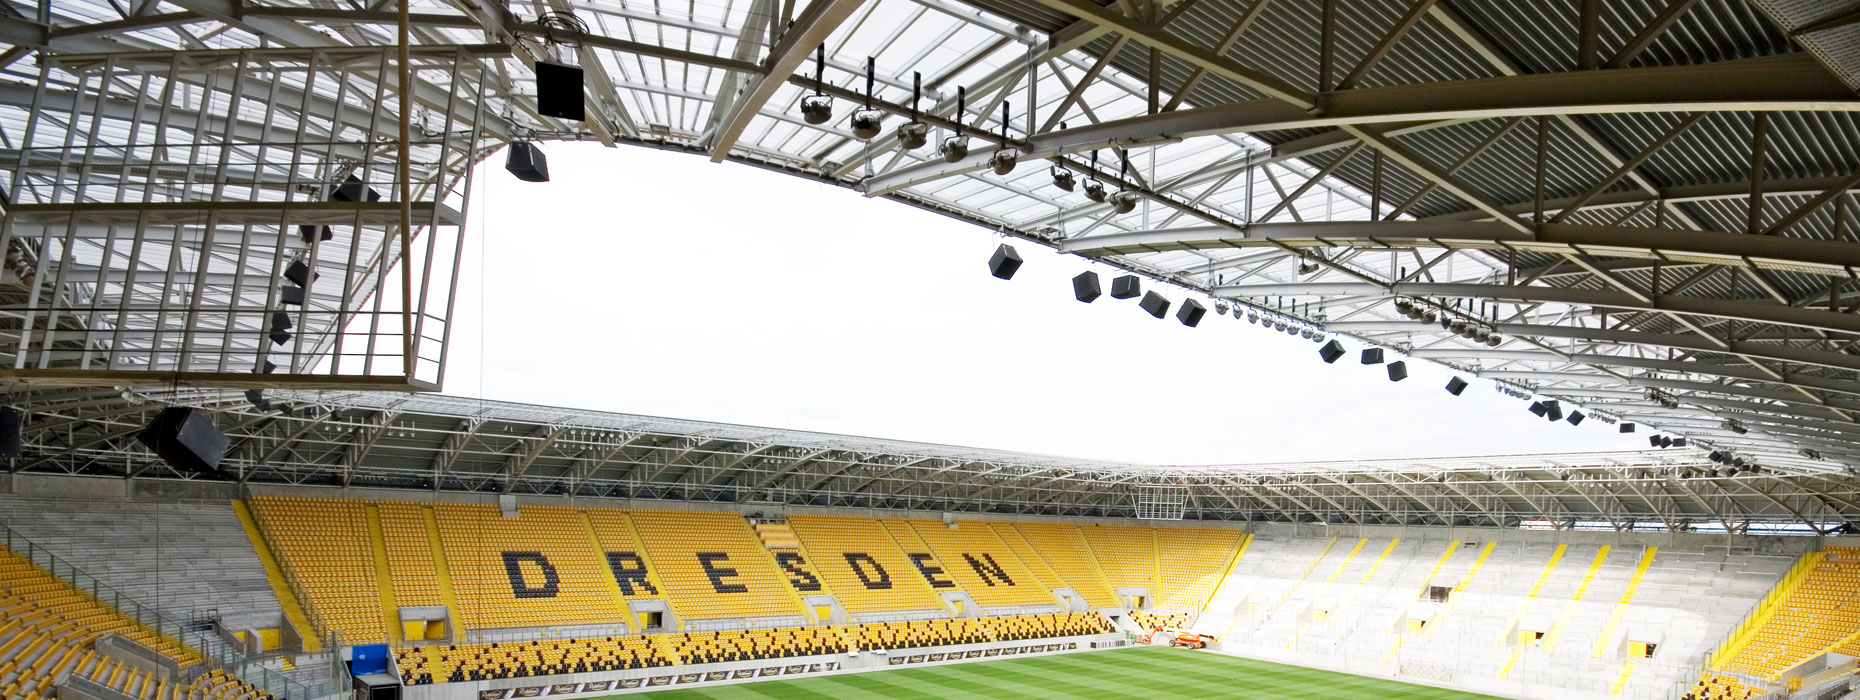 Dynamo Dresden Stadiondach